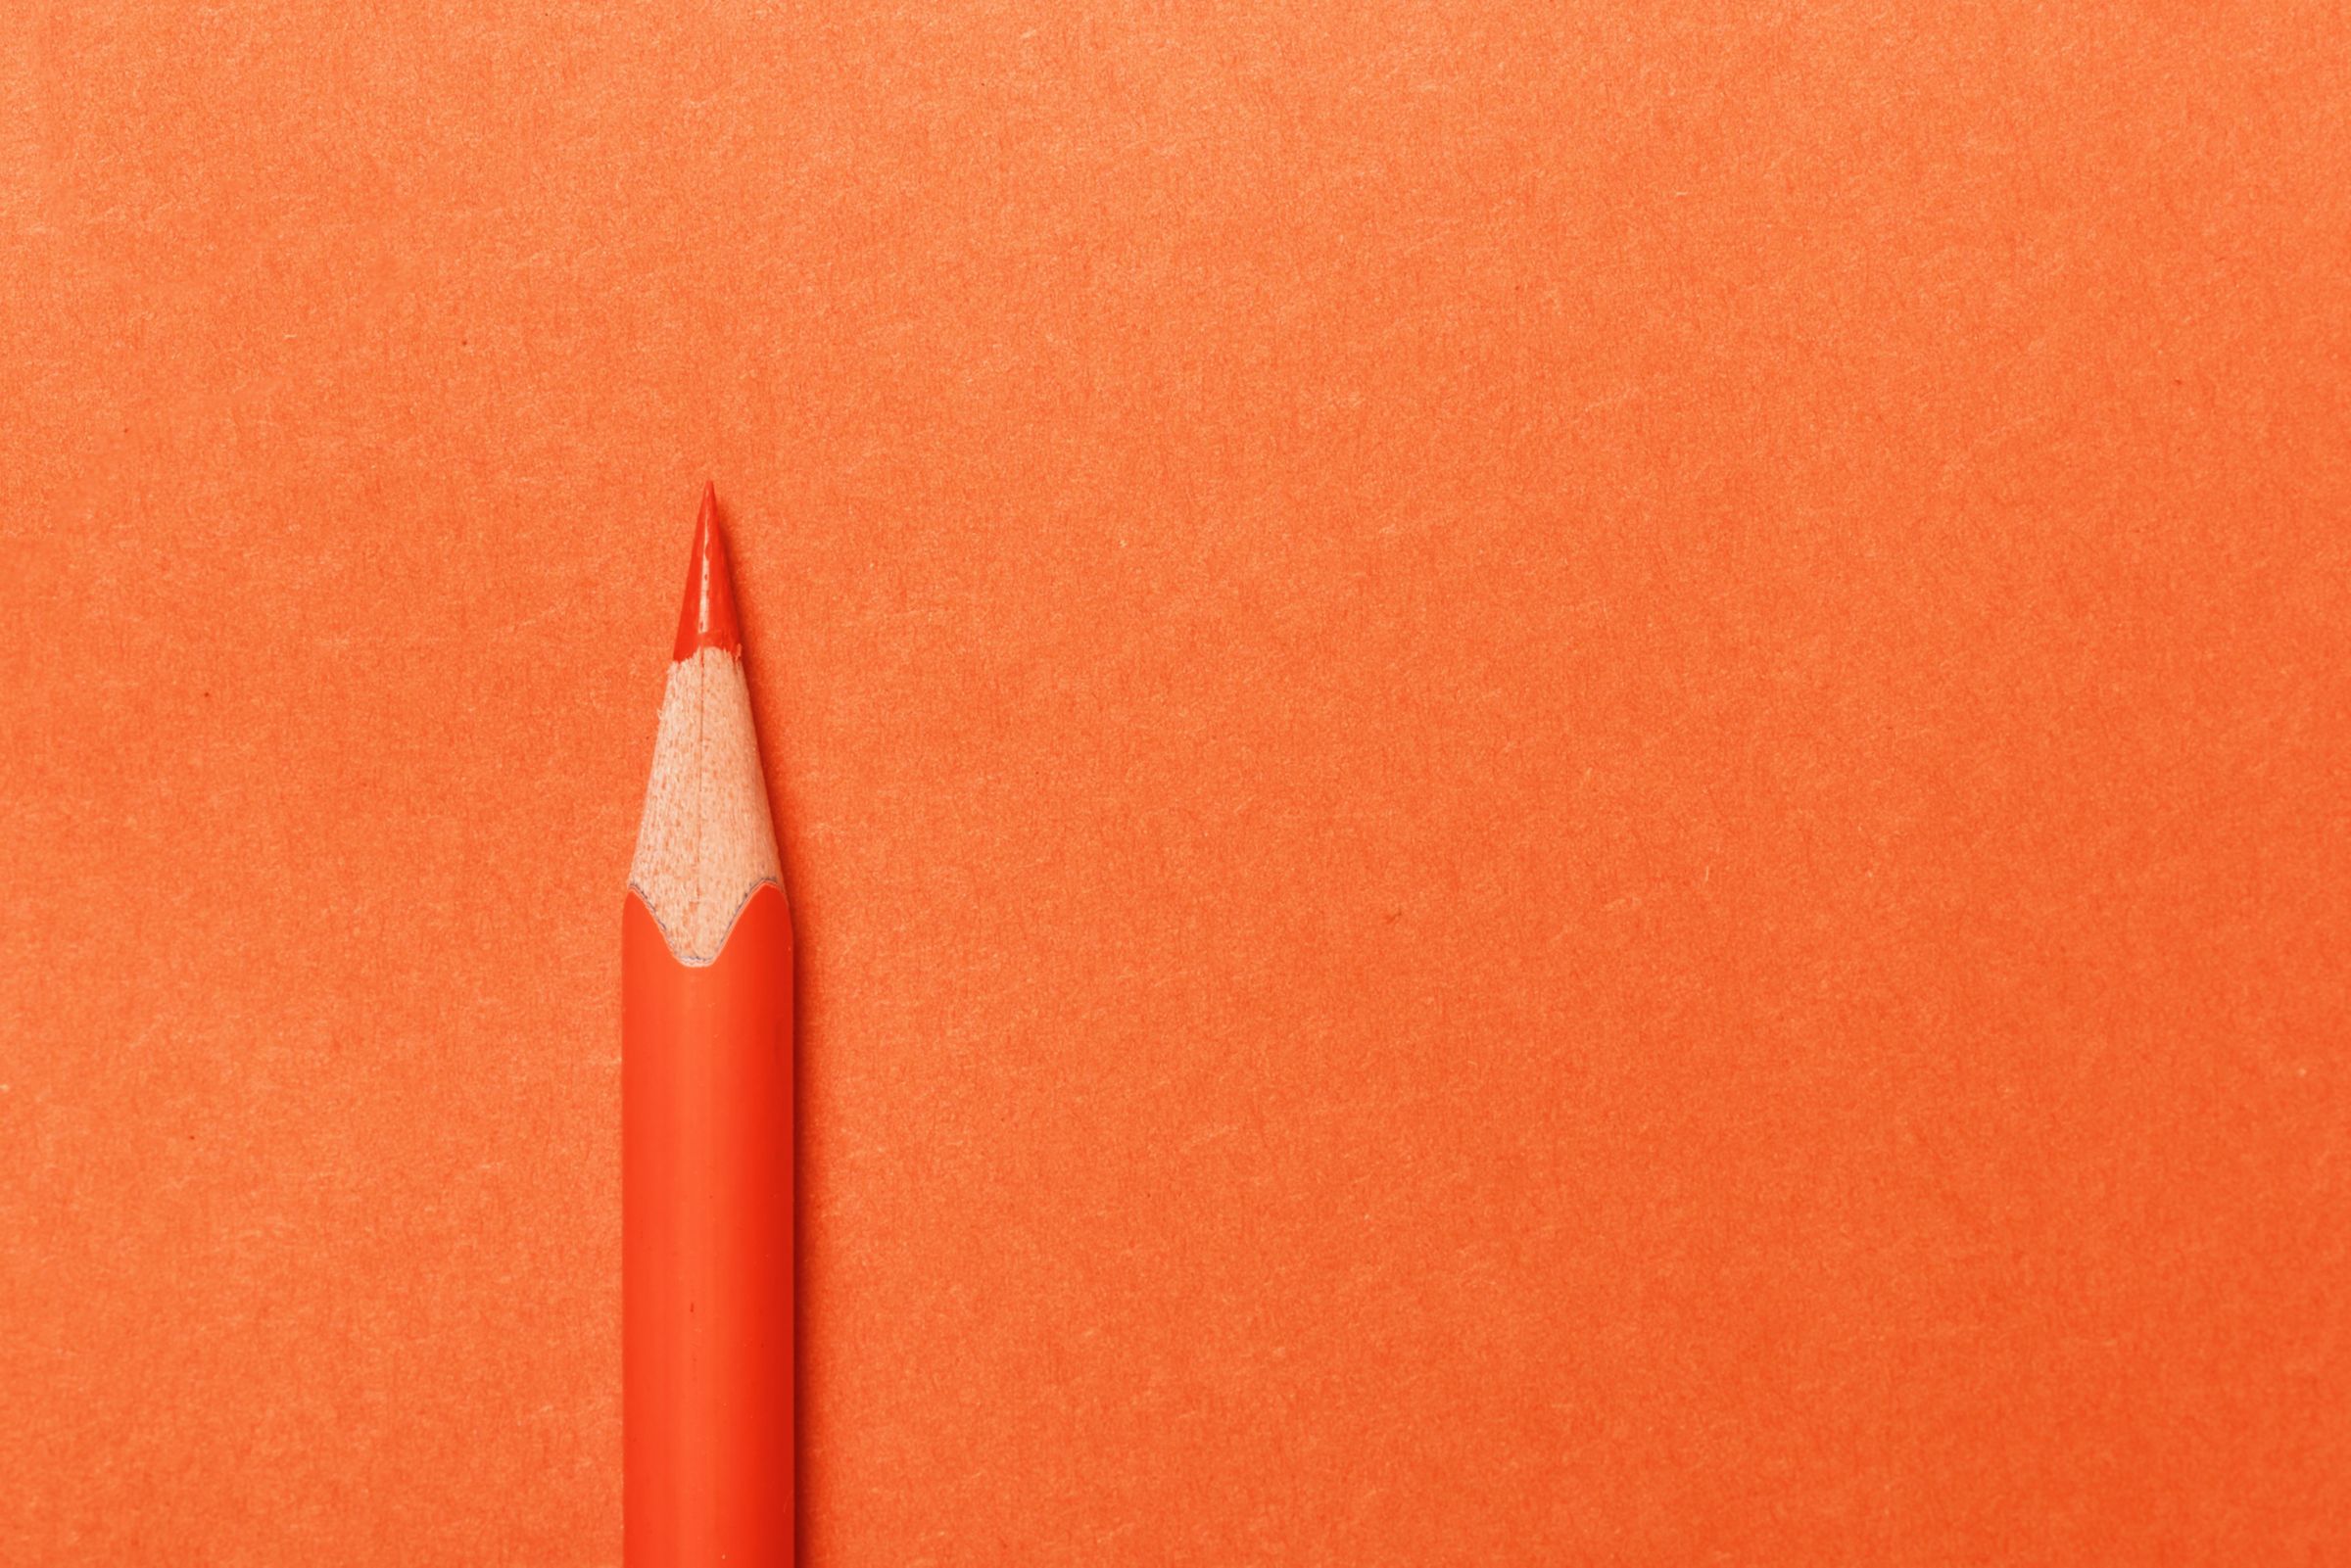 Orange pencil lies on an orange paper background.